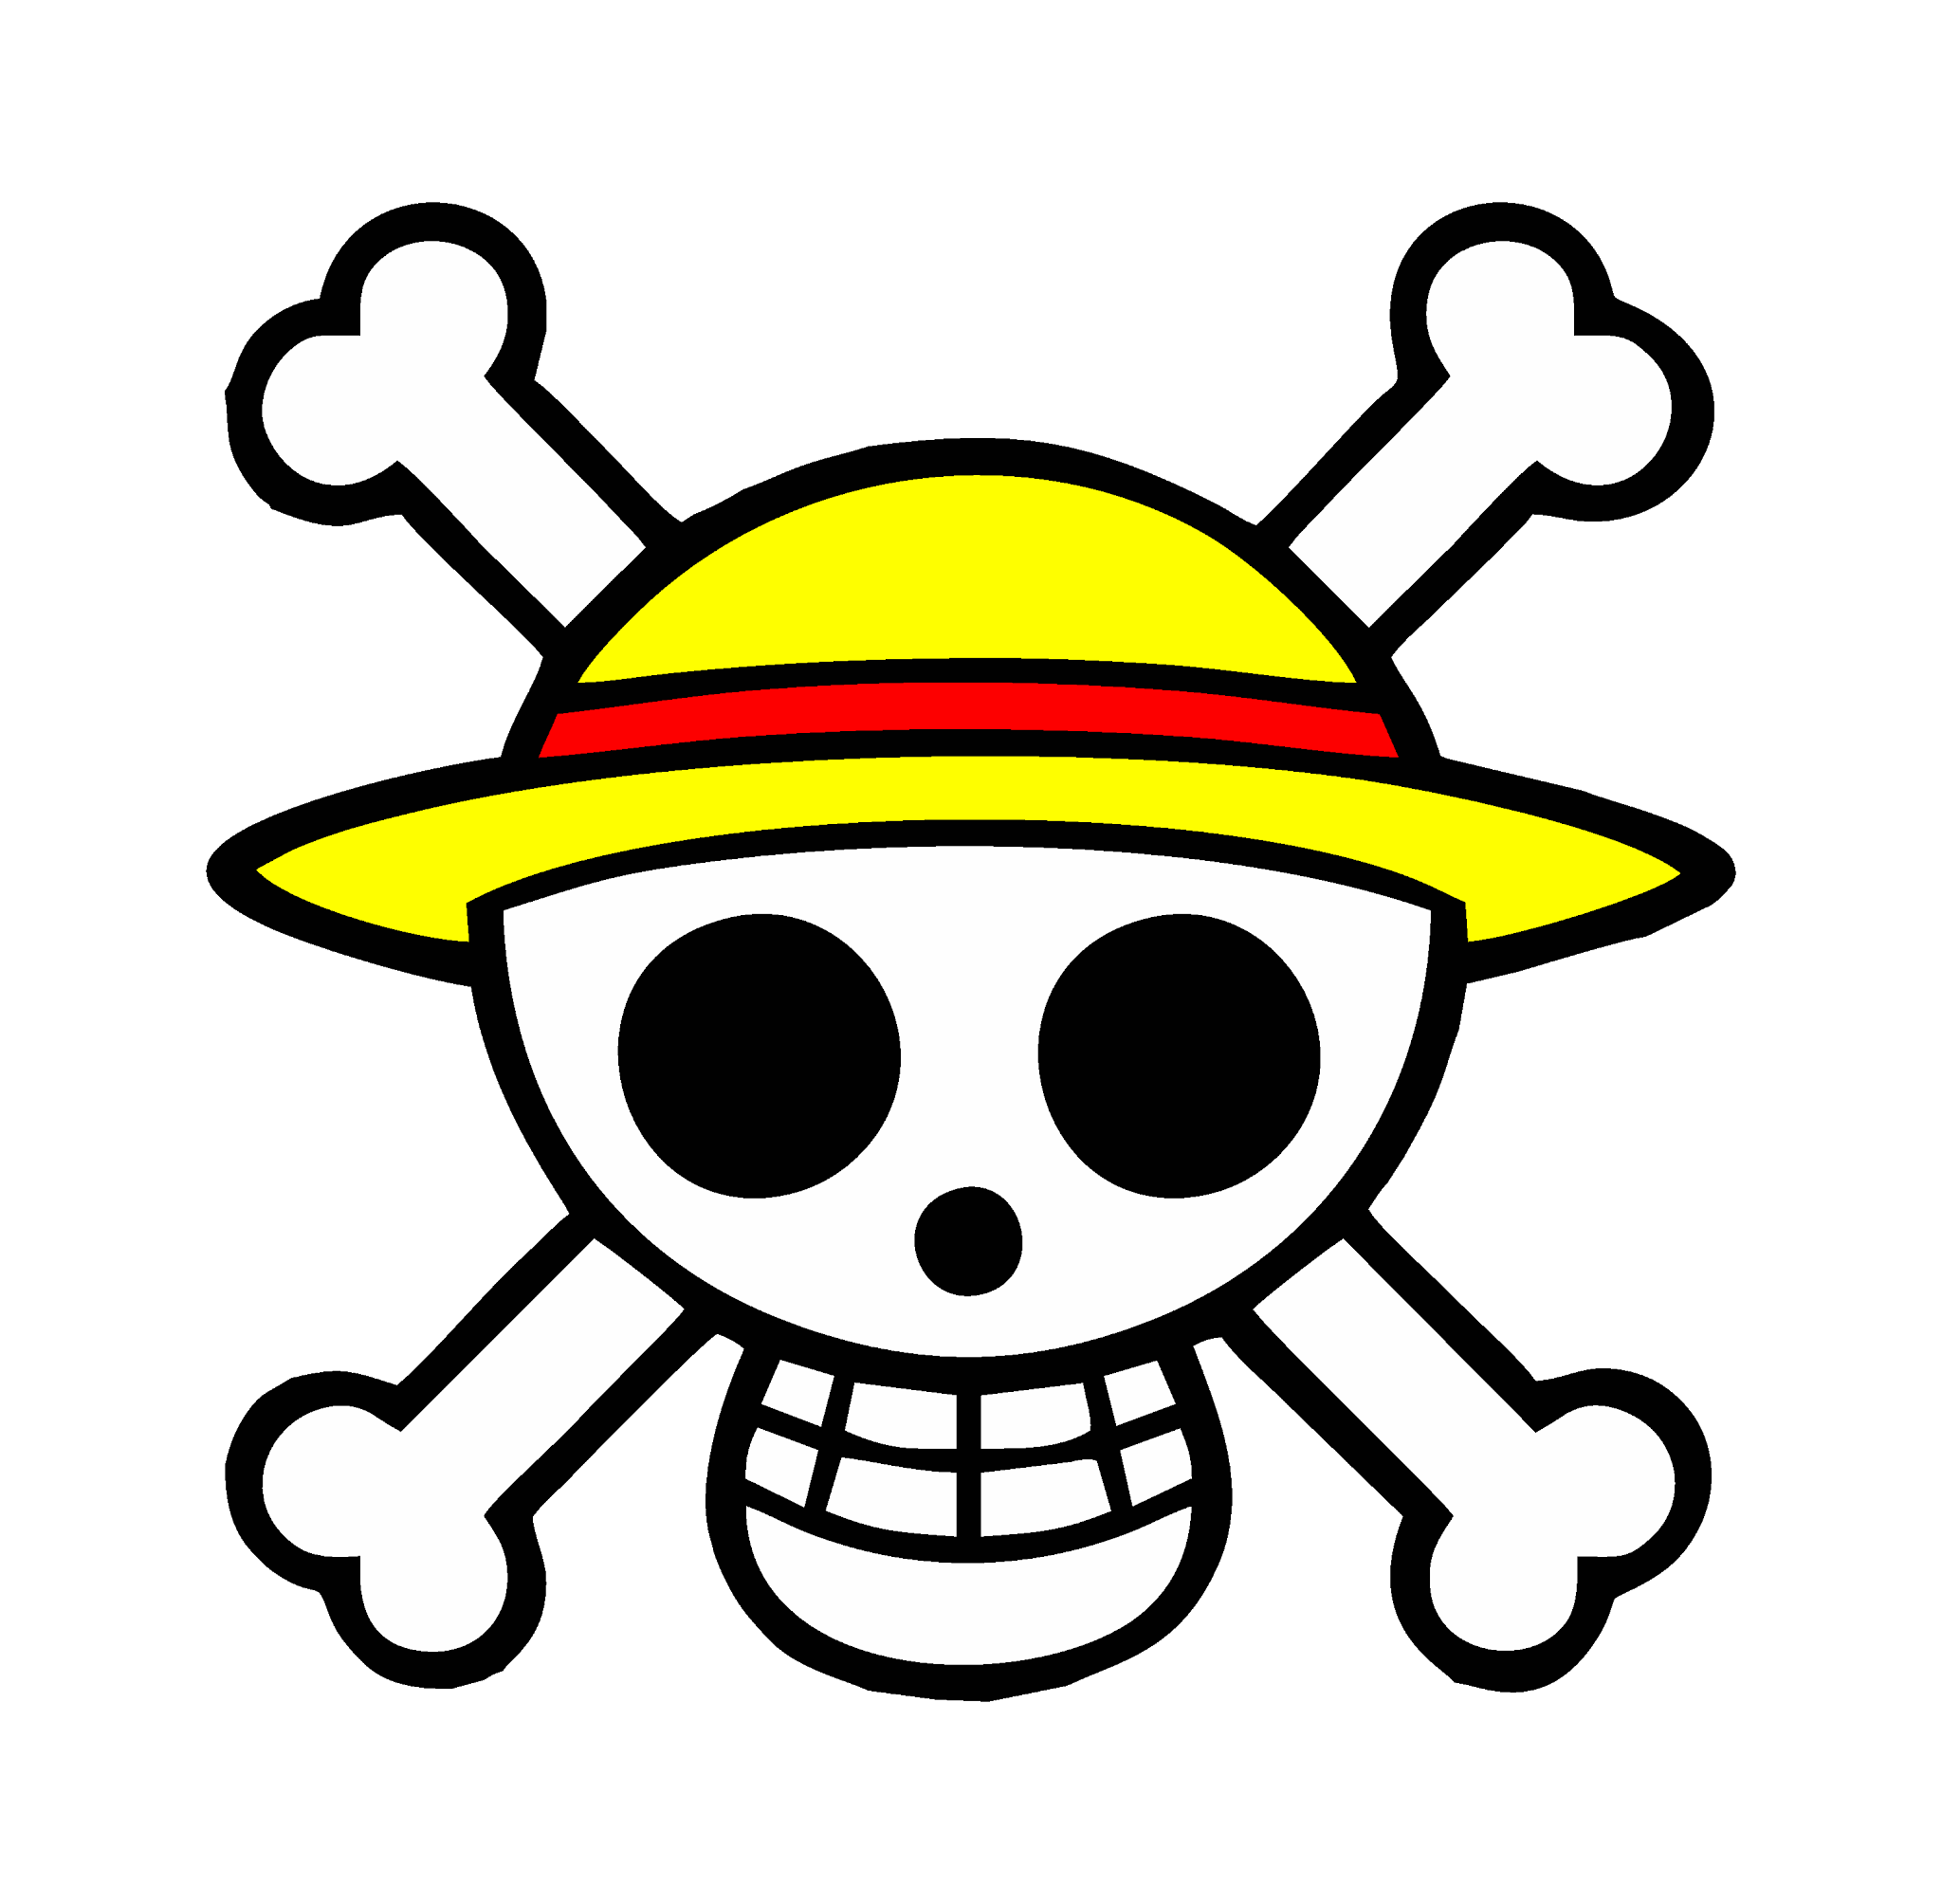  Logo One Piece  Yogiancreative